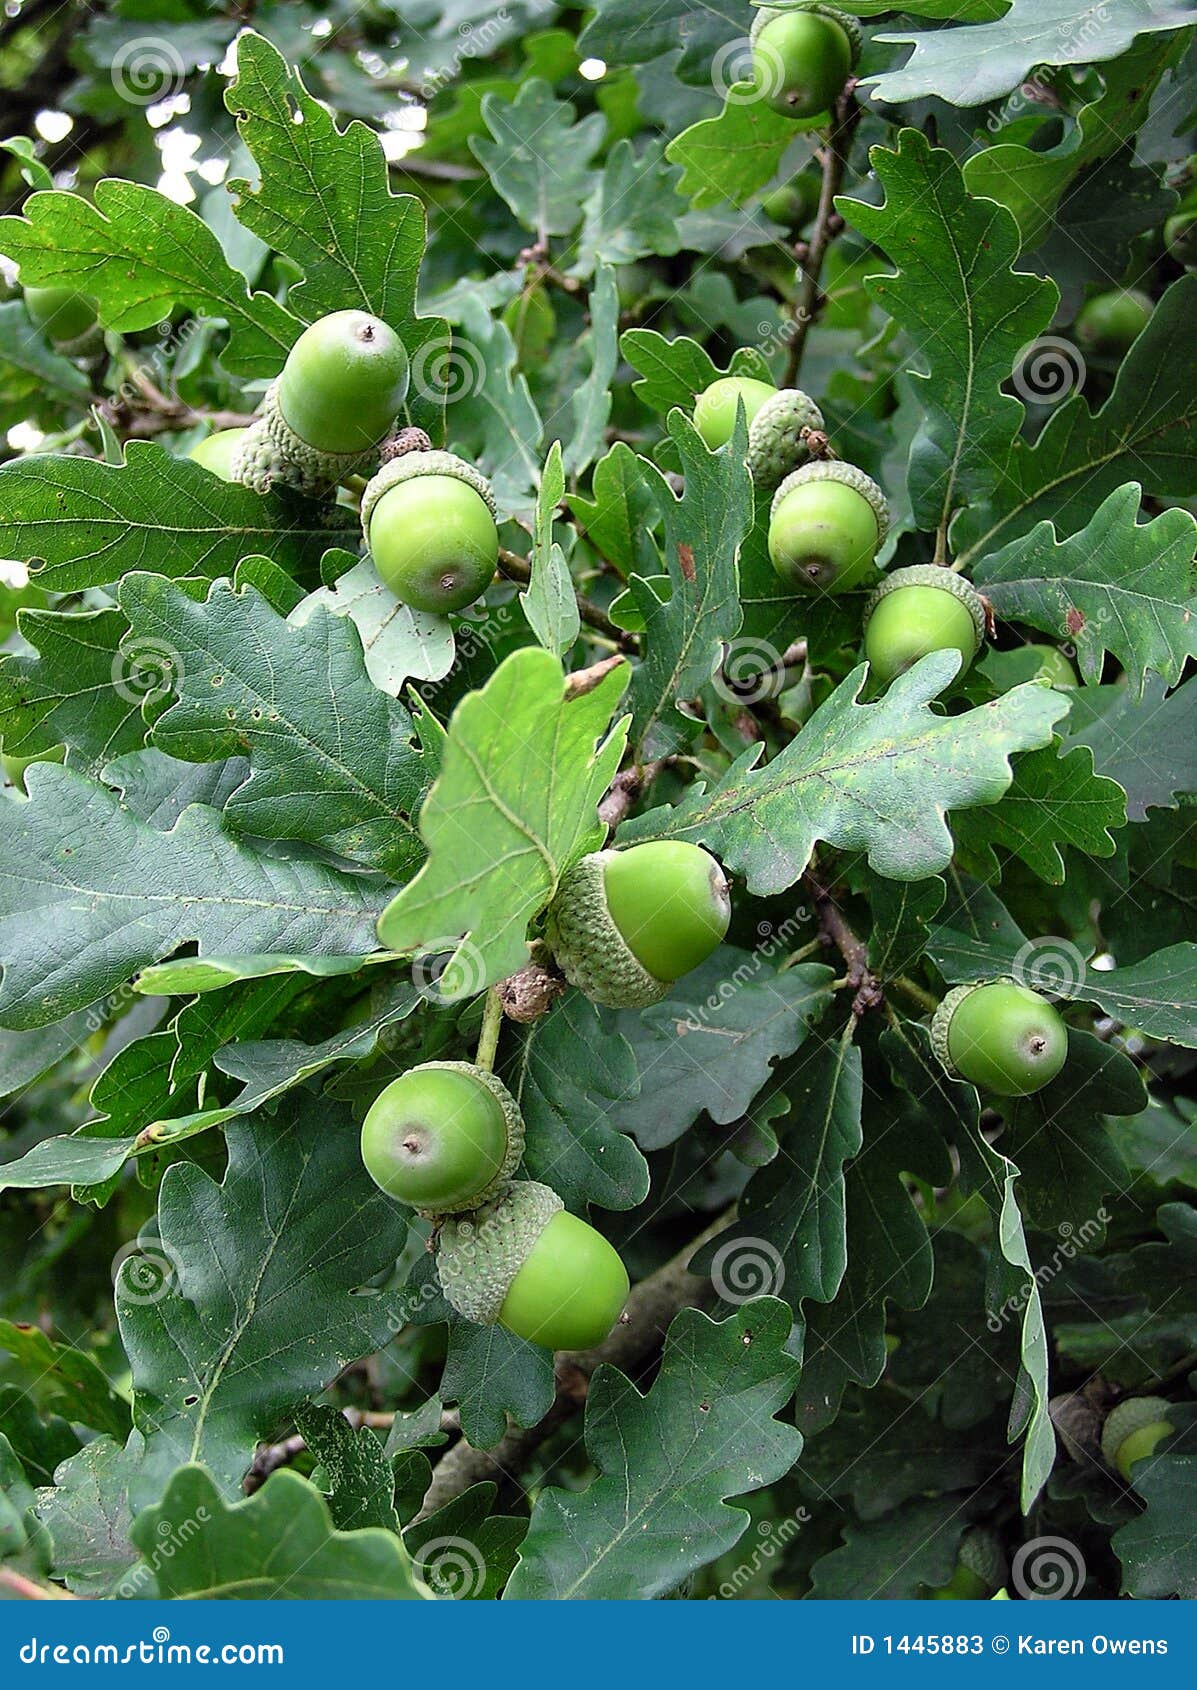 green acorns